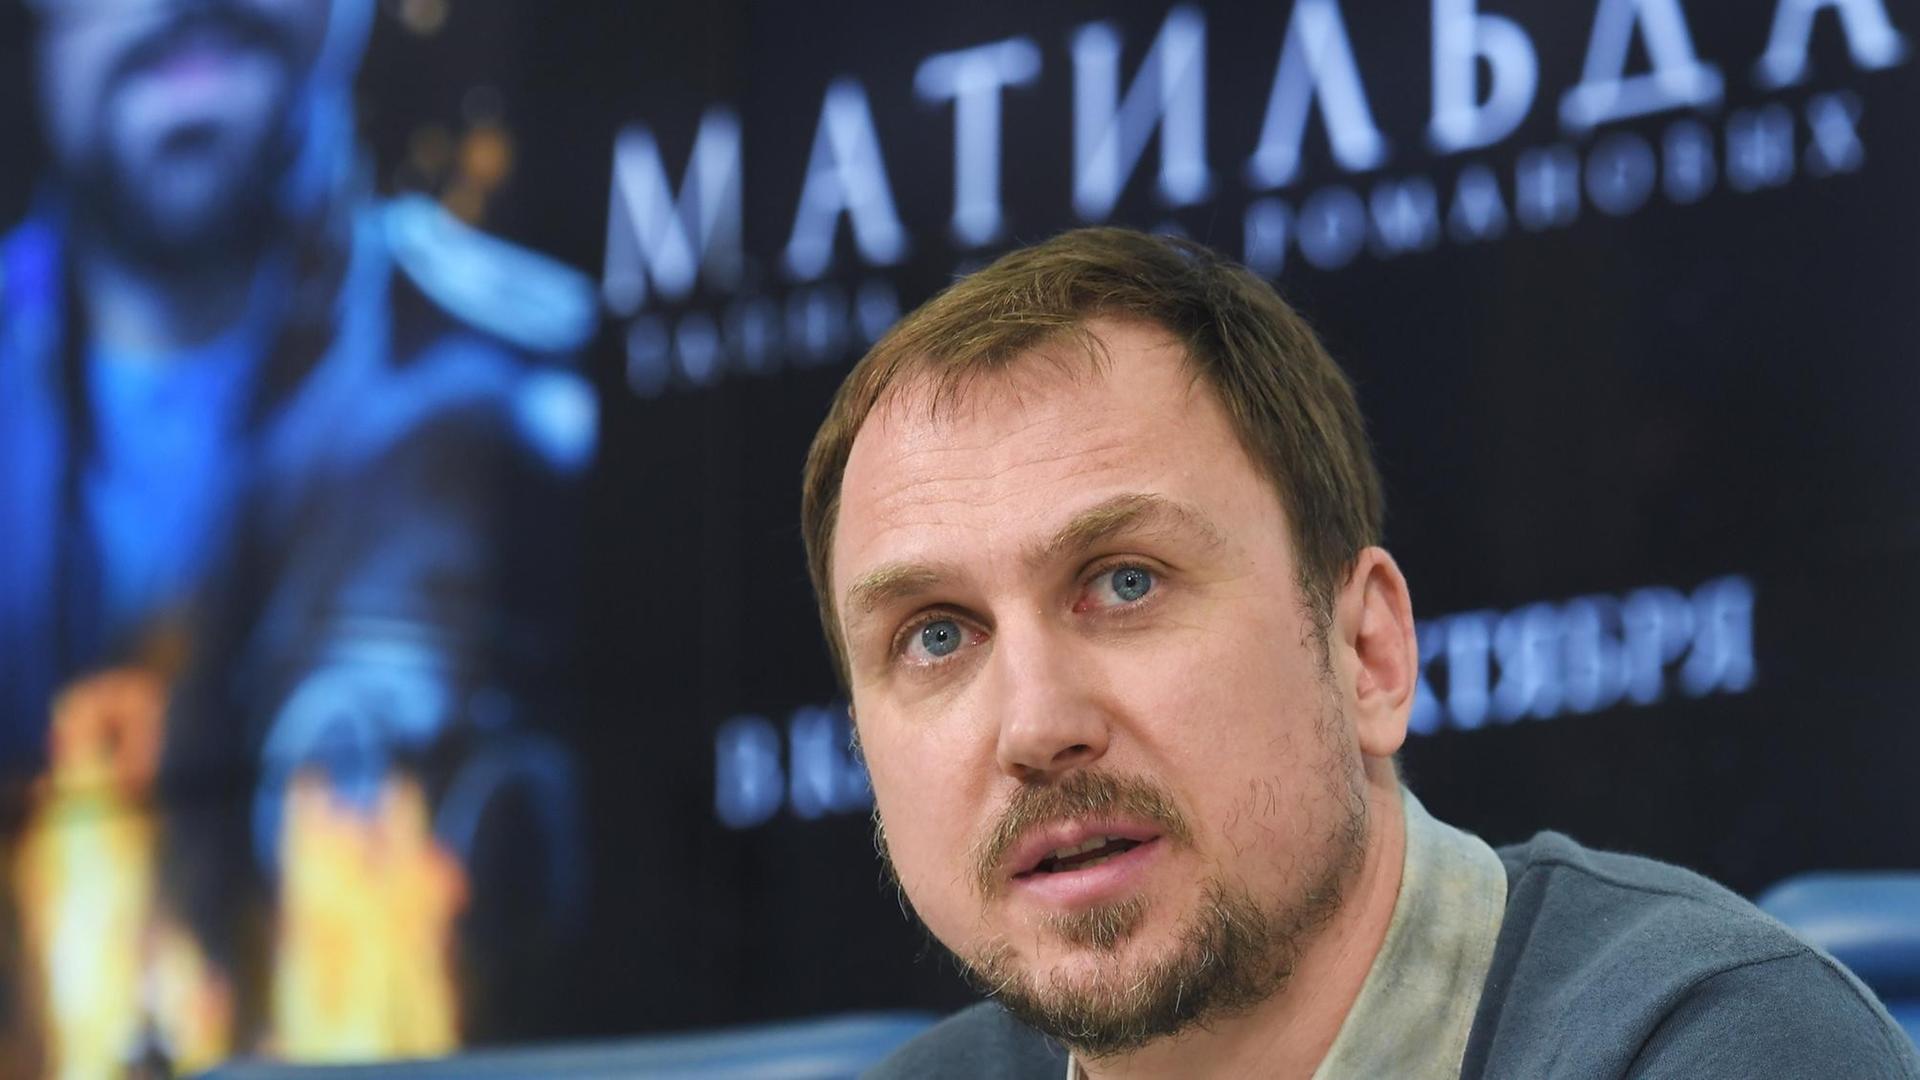 Der deutsche Schauspieler Lars Eidinger bei der Vorstellung des Films "Matilda" in Russland.